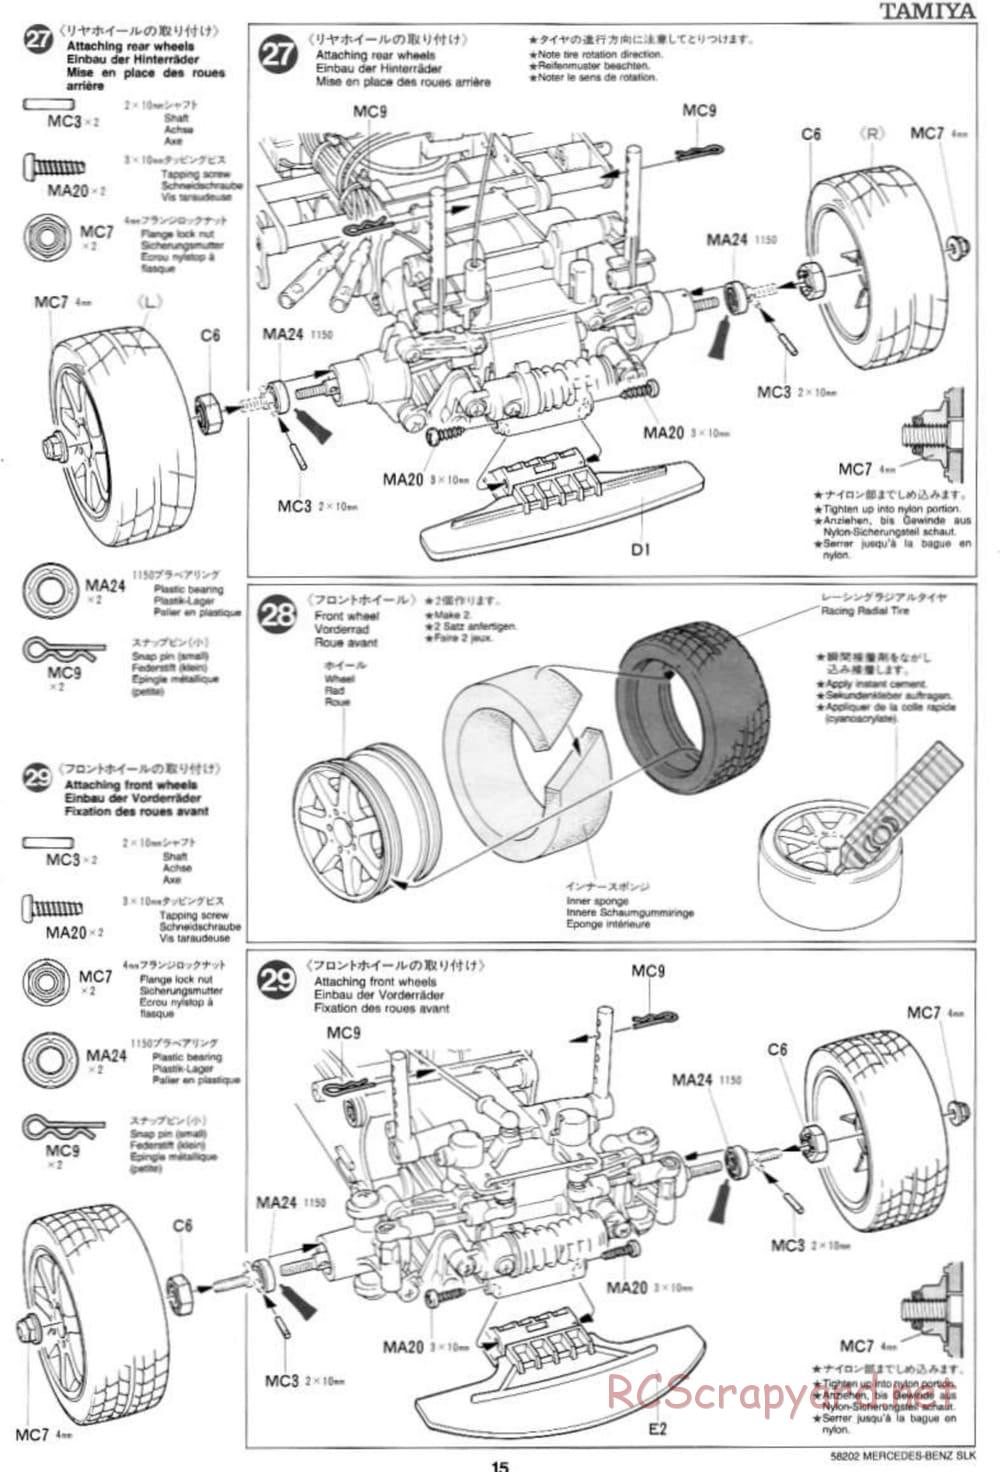 Tamiya - Mercedes-Benz SLK - M02L Chassis - Manual - Page 15